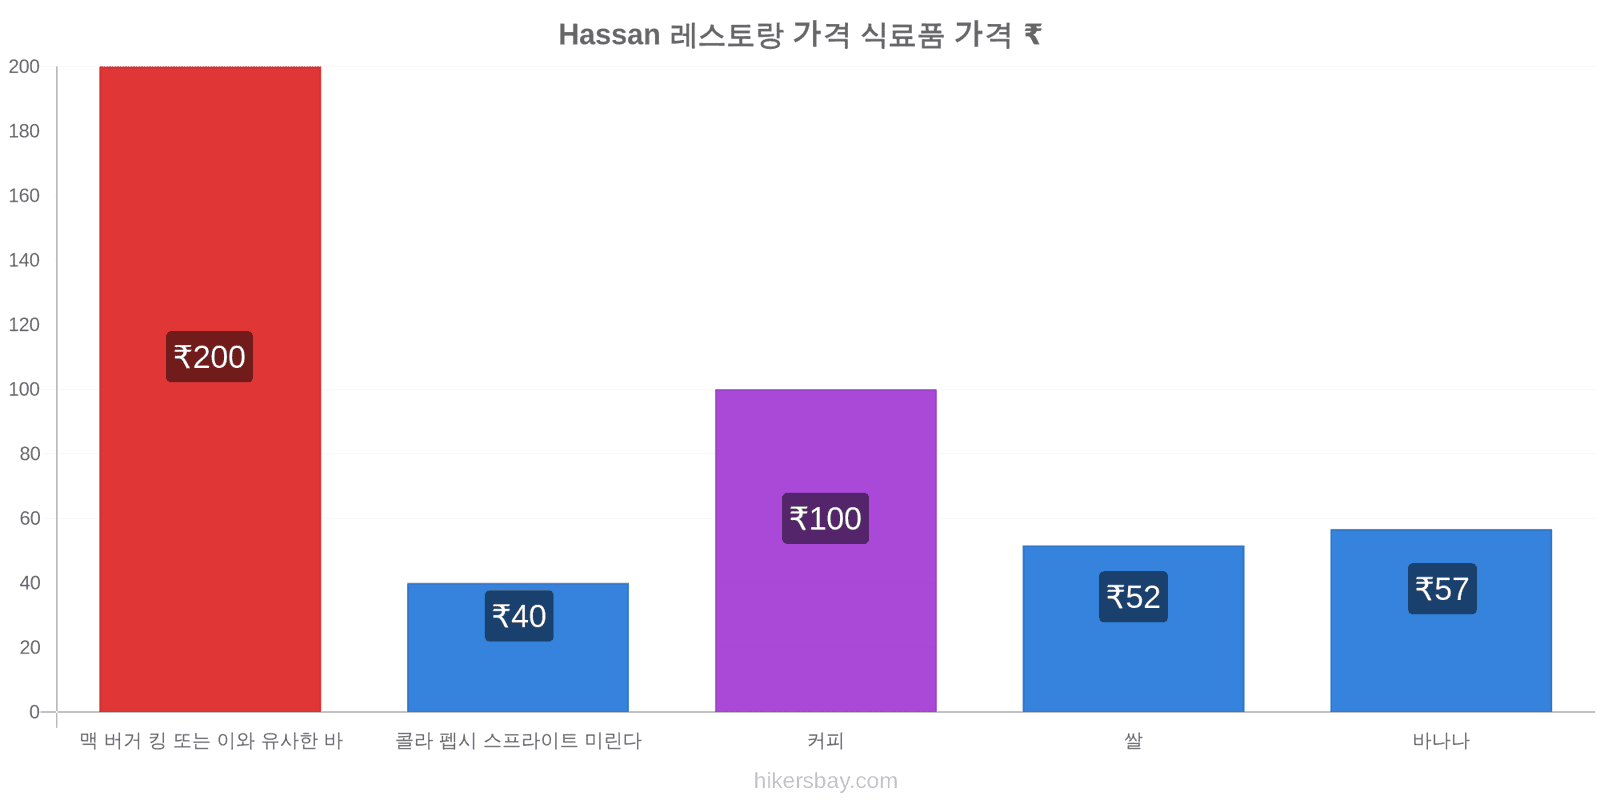 Hassan 가격 변동 hikersbay.com